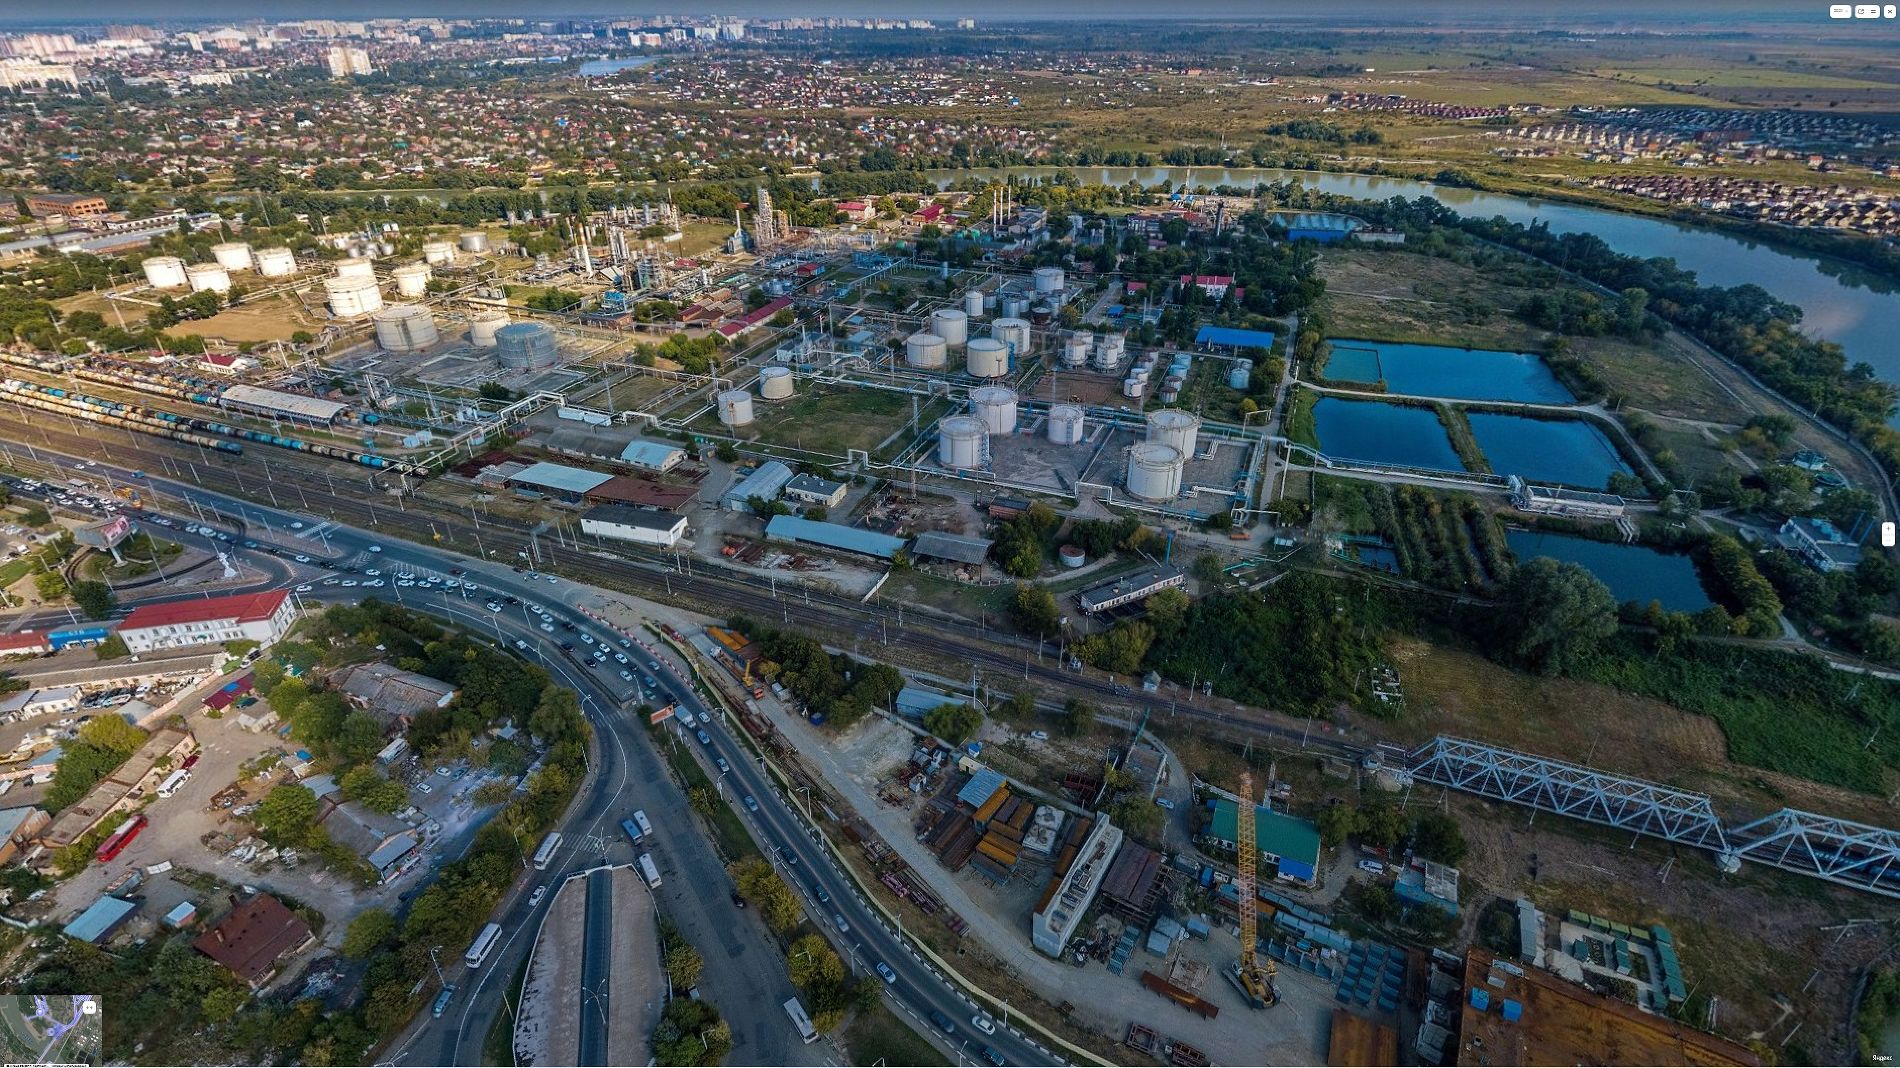 Краснодарский НПЗ по улице Захарова © Скриншот панорамы yandex.ru/maps 2021 года